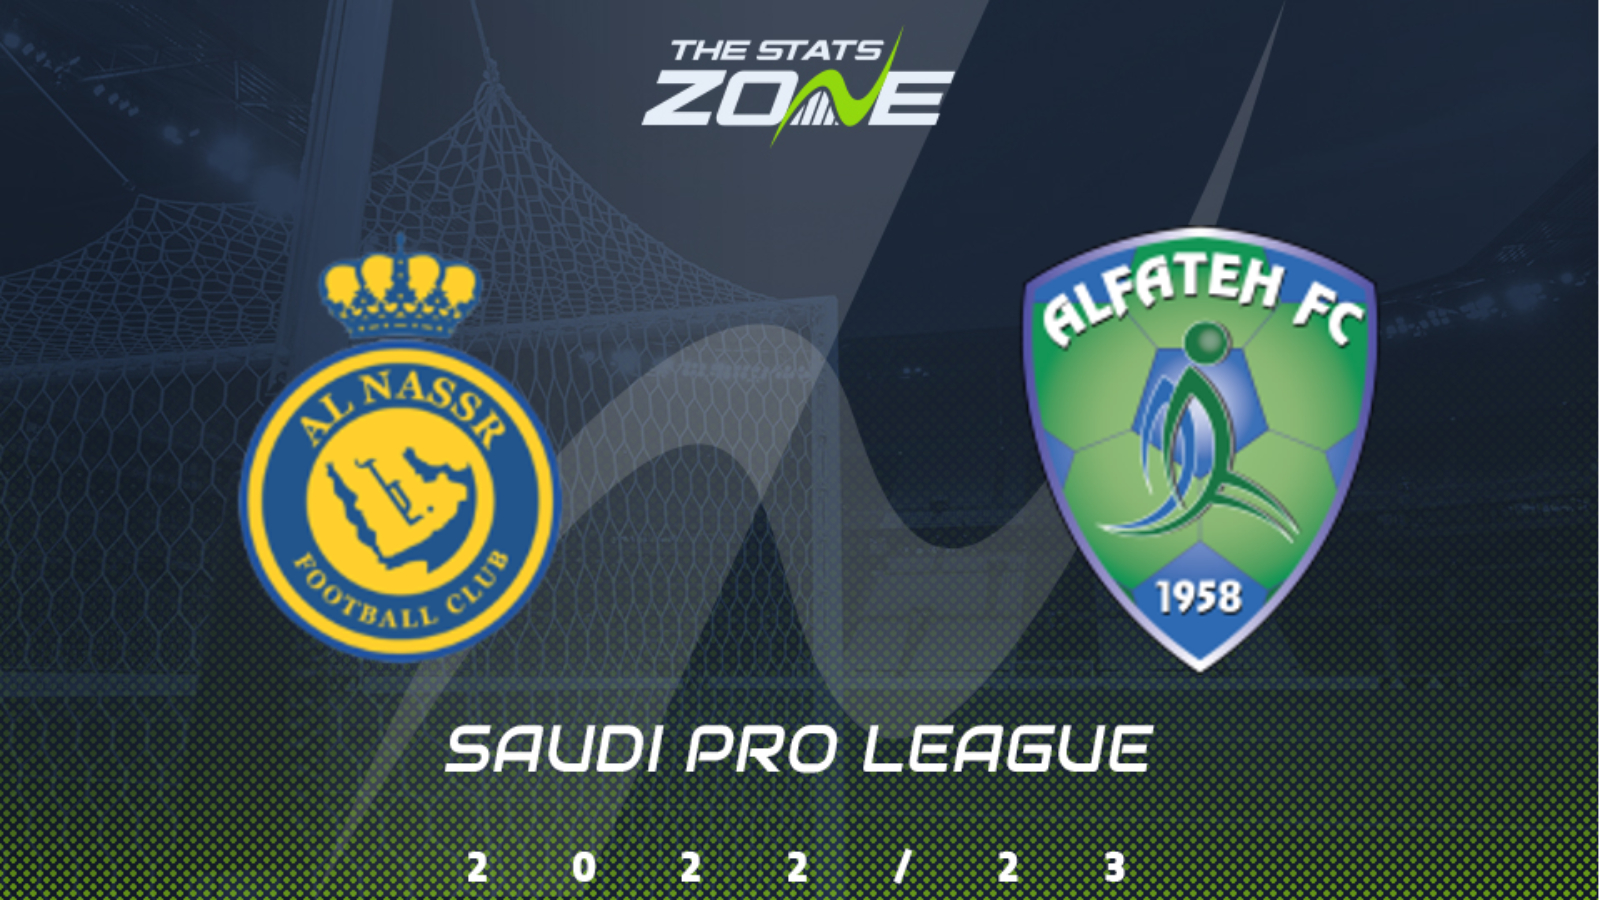 Saudi pro league. Saudi Pro League logo. Al Fateh. ALNASSR 2023.